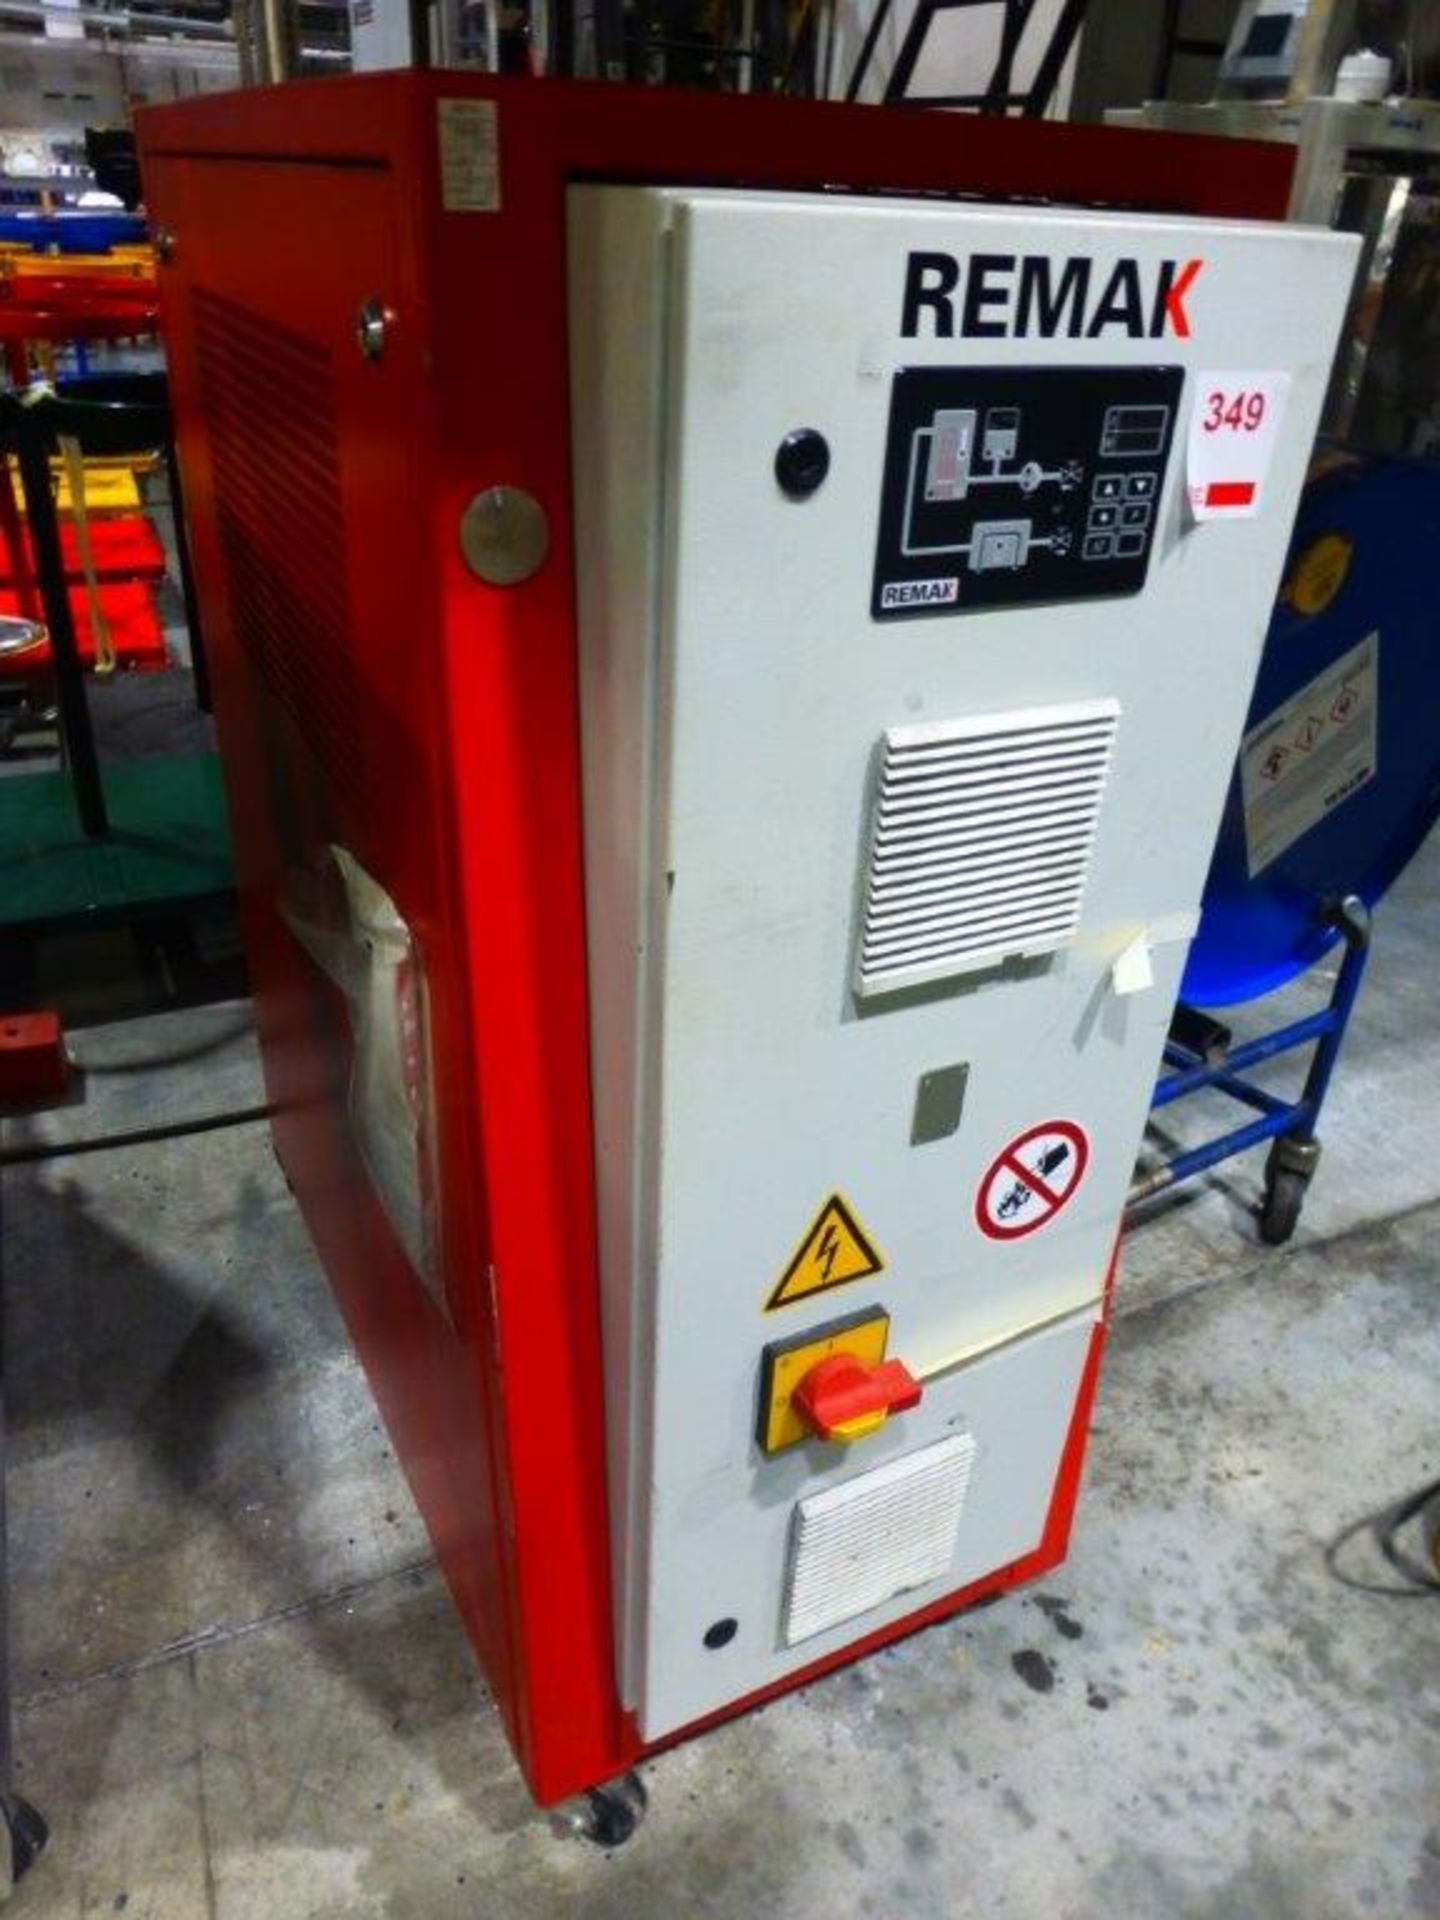 Remak TRW95/EWR 30.0 temperature control unit, serial No 404700.10.000/02 (A Risk Assessment and